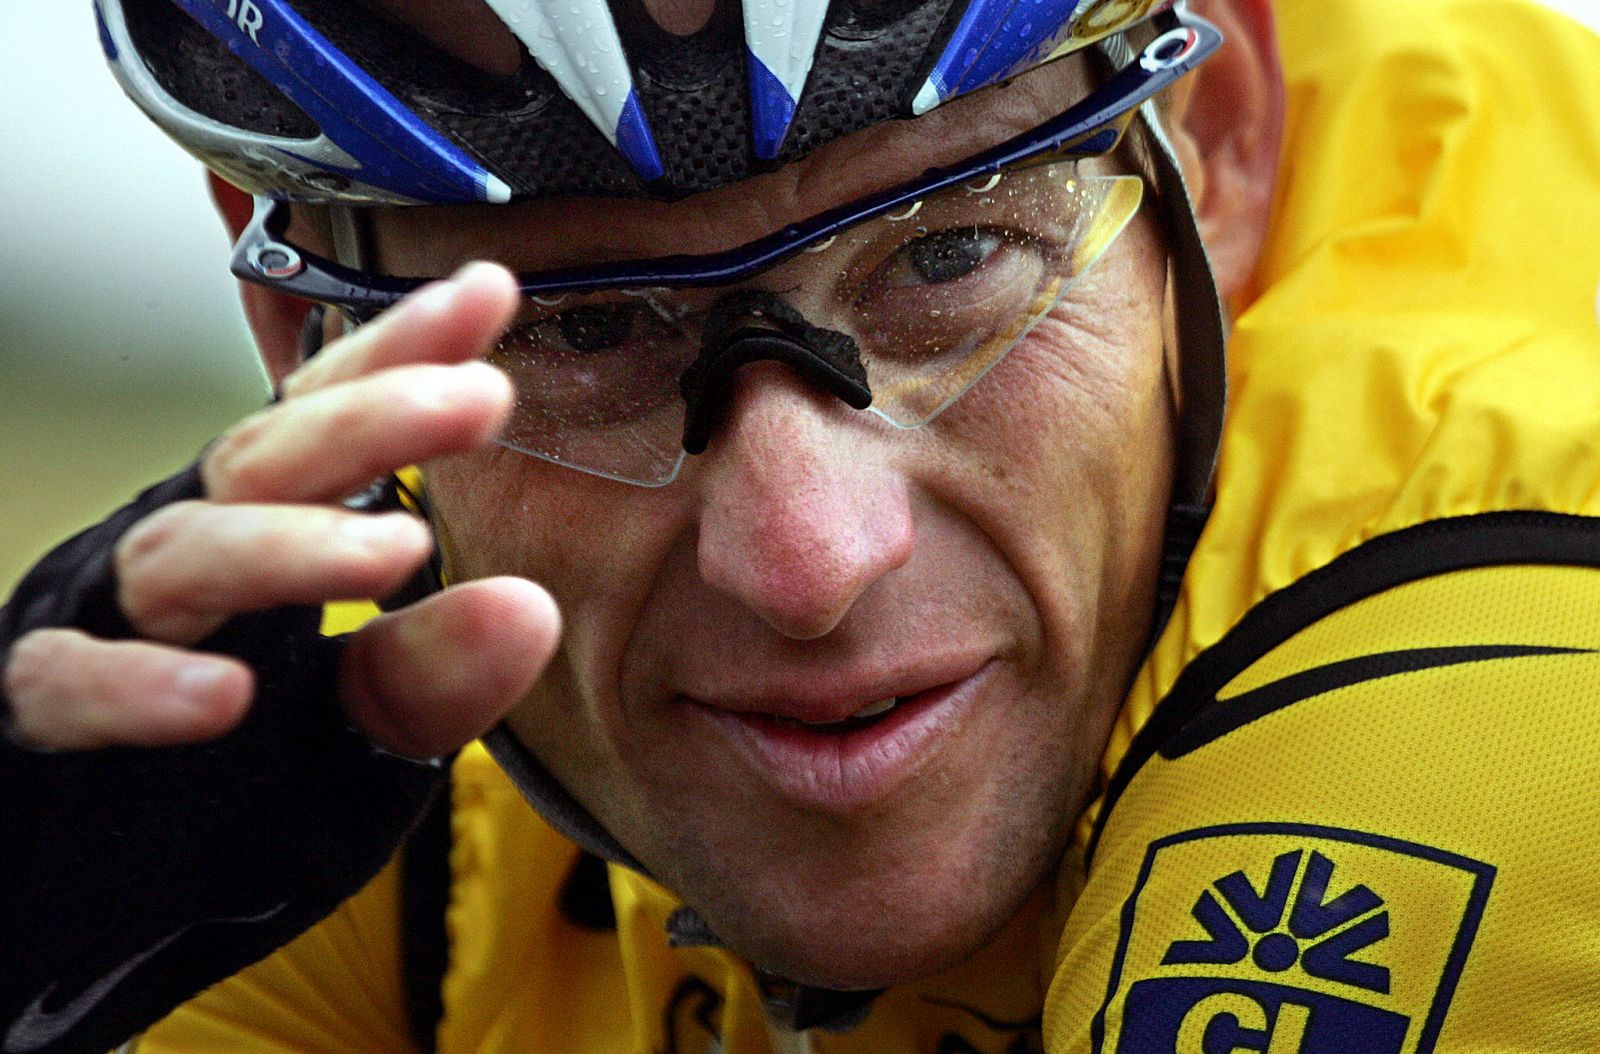 Imagen de archivo del exciclista Lance Armstrong, en su etapa en activo